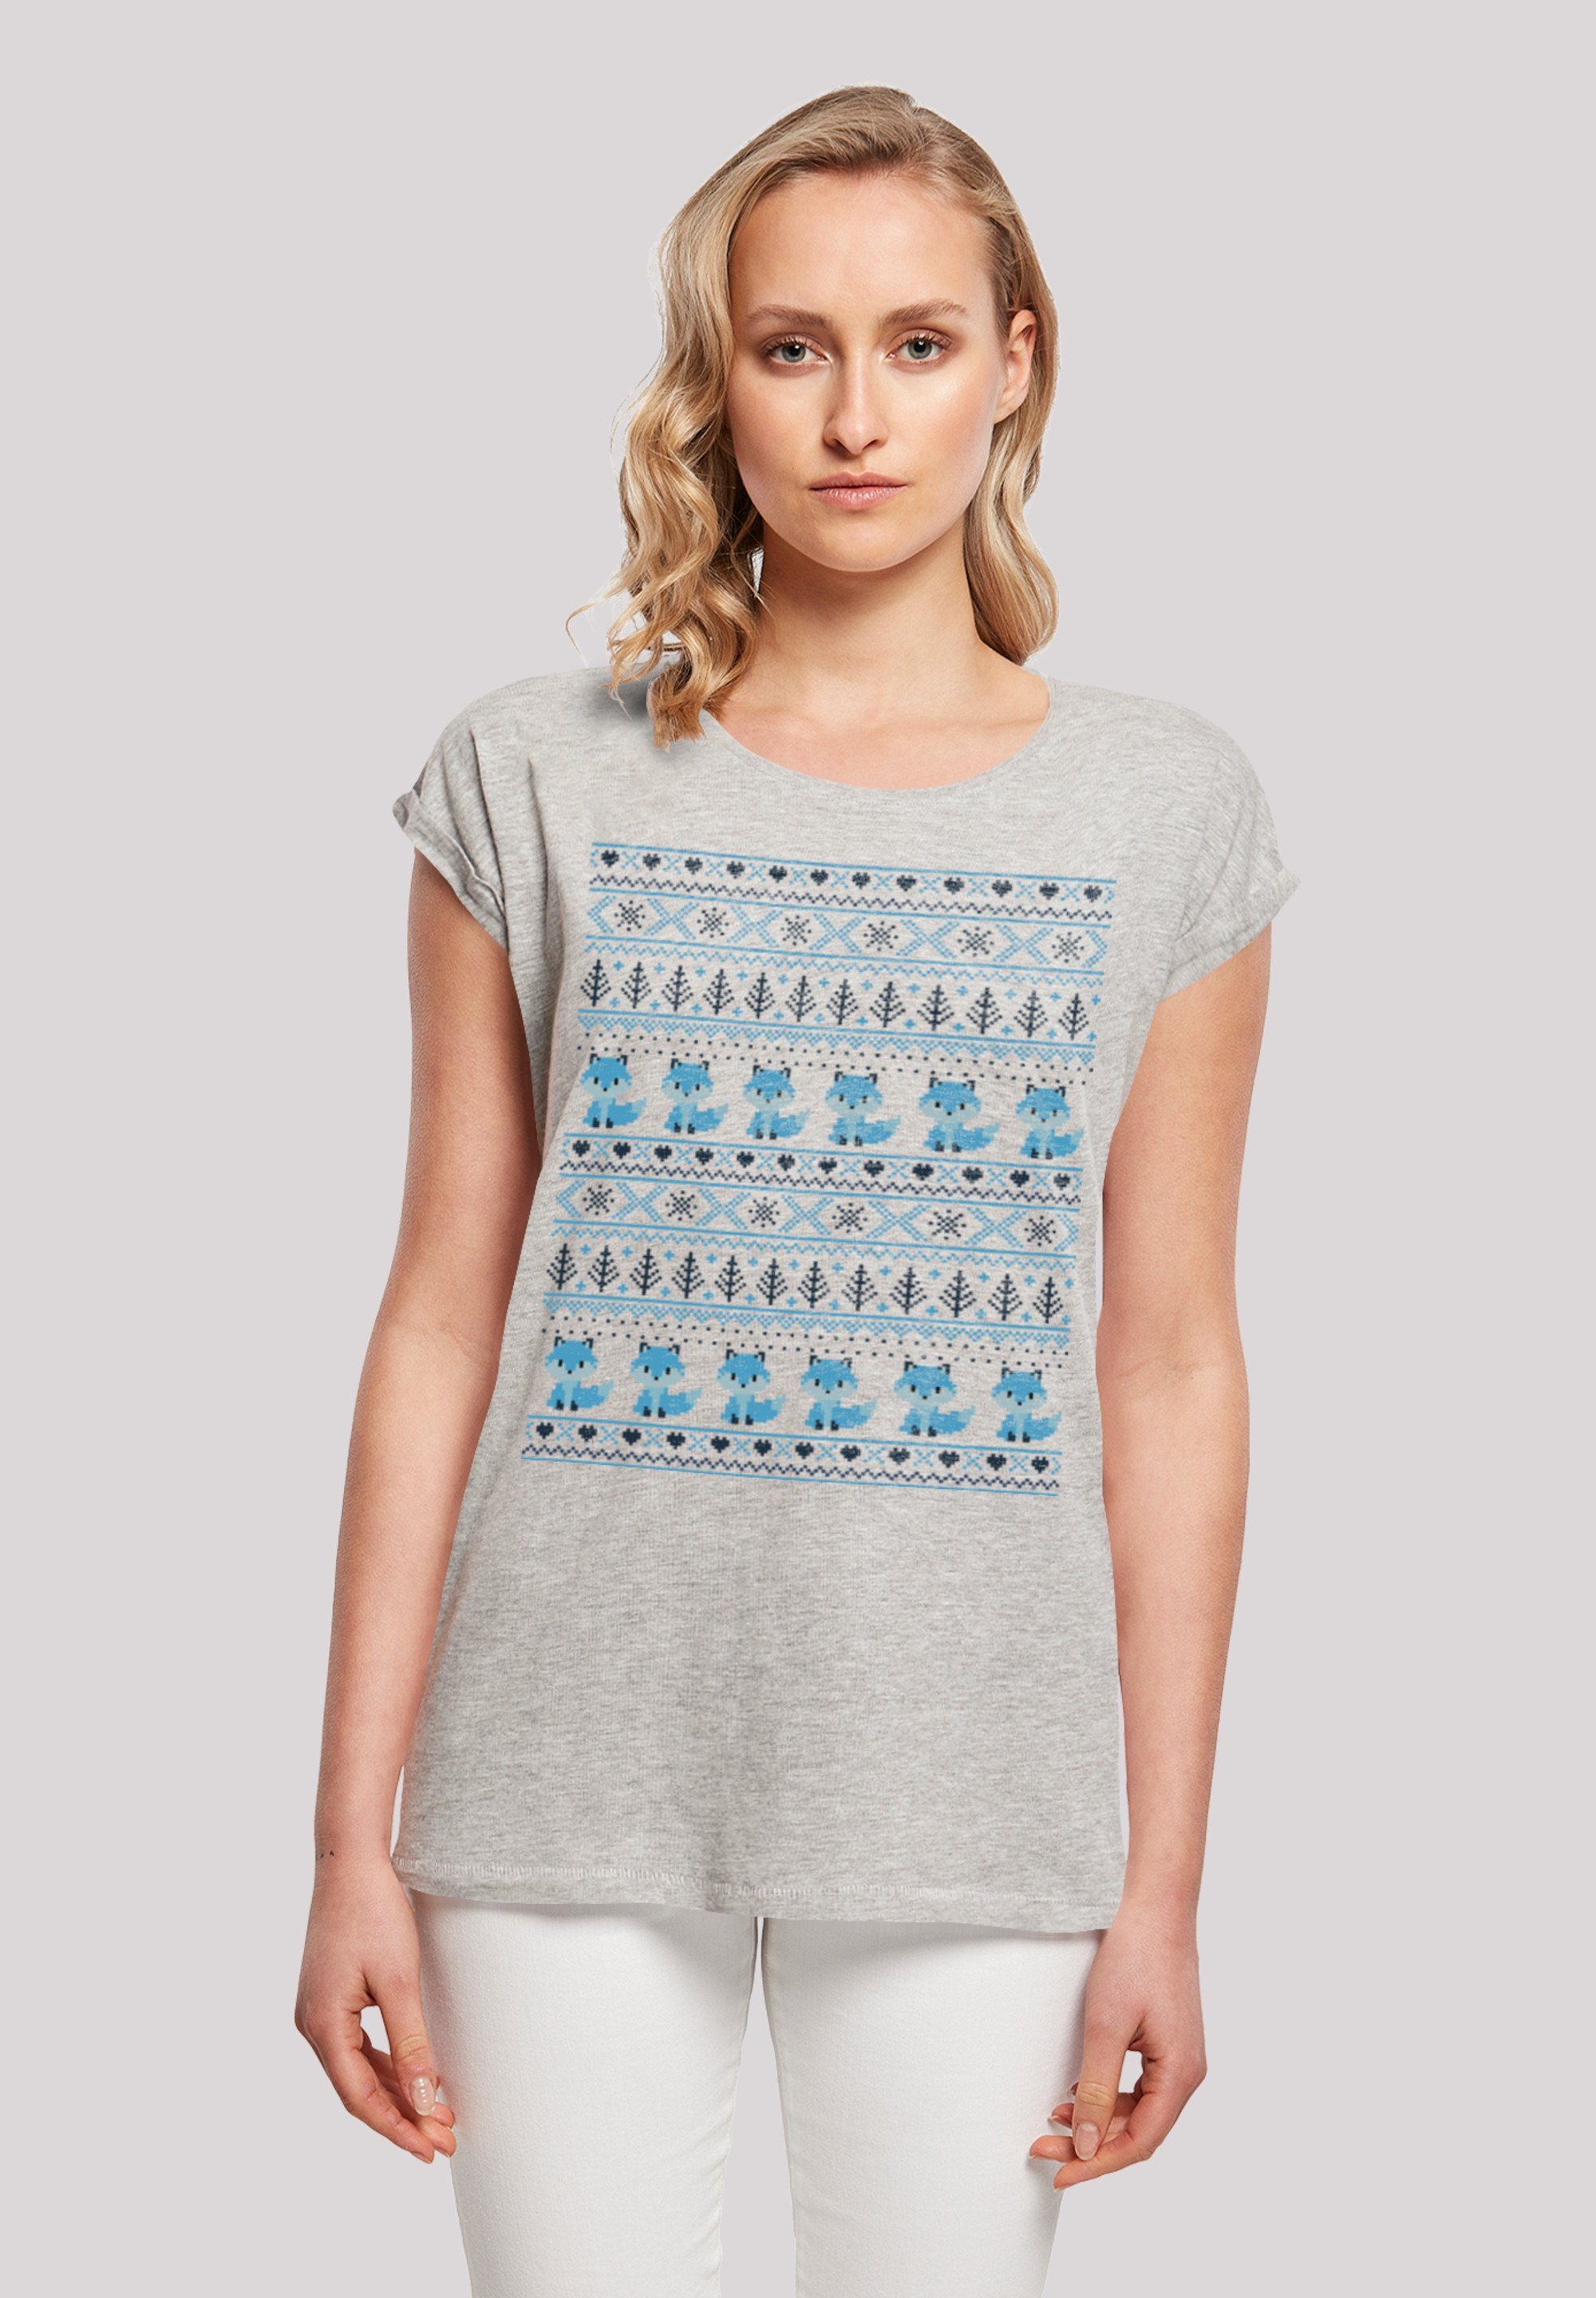 F4NT4STIC T-Shirt Christmas Fuchs weicher Baumwollstoff Print, Weihnachten hohem mit Tragekomfort Sehr Muster